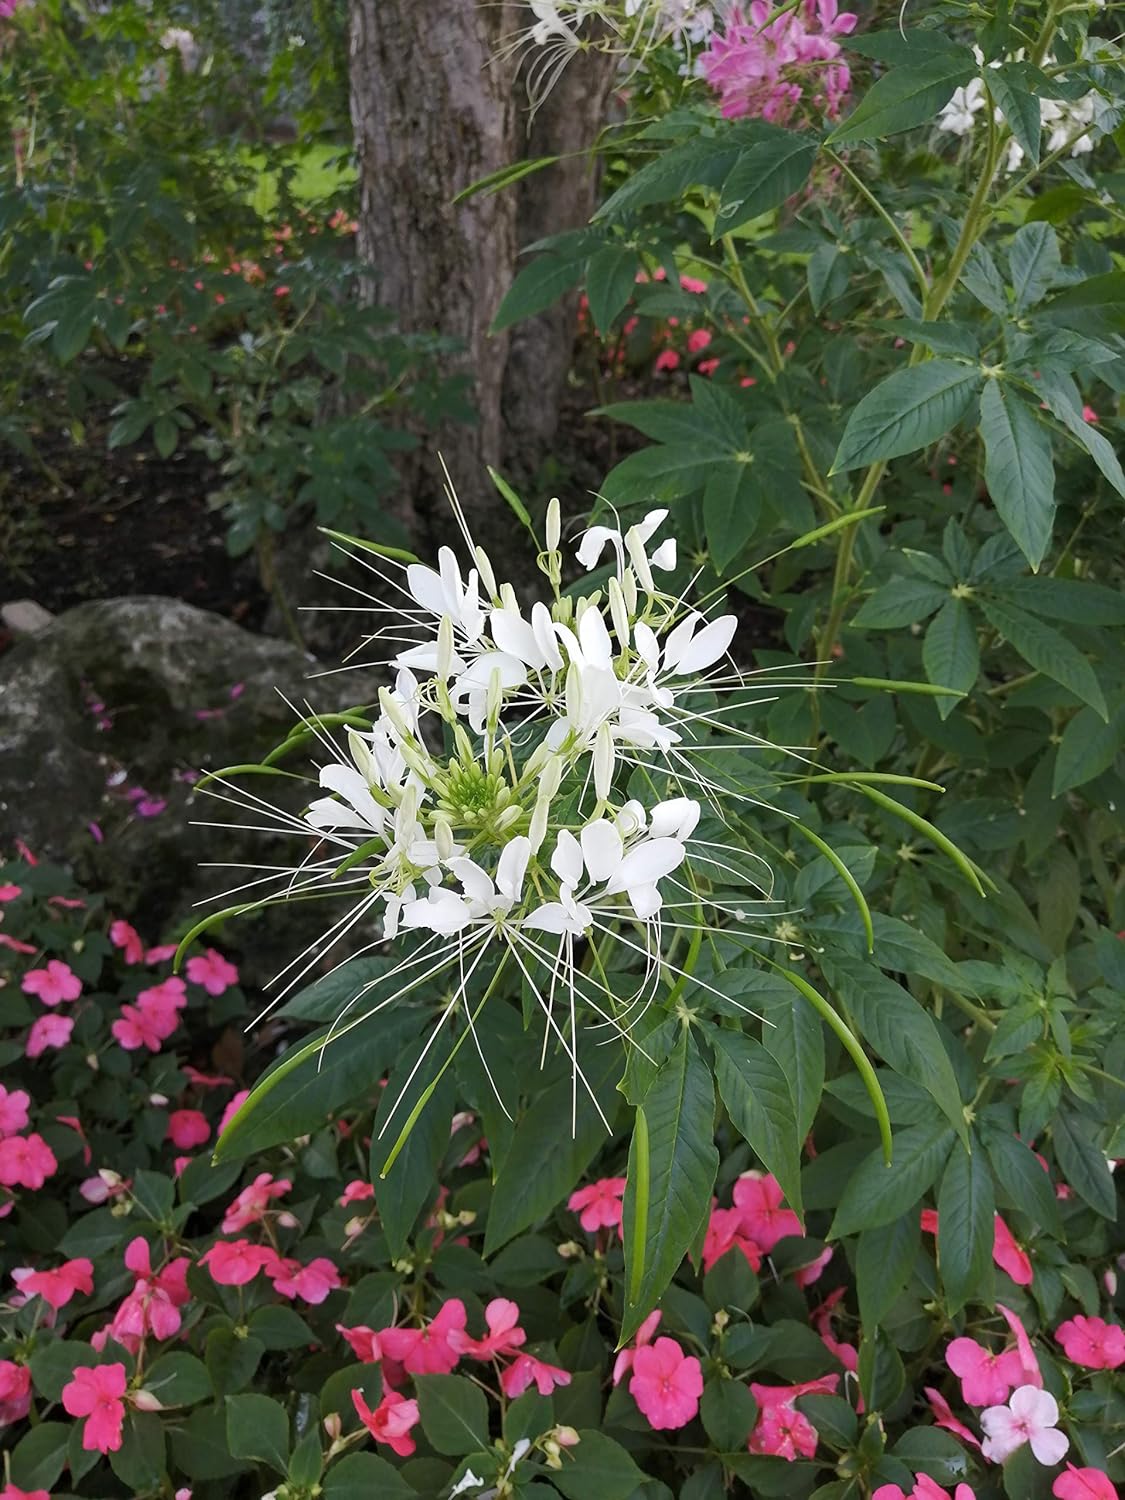 Hundredfold Cleome White Spider Flower 200 Seeds - Cleome hassleriana, White Queen, Summer Garden Staple